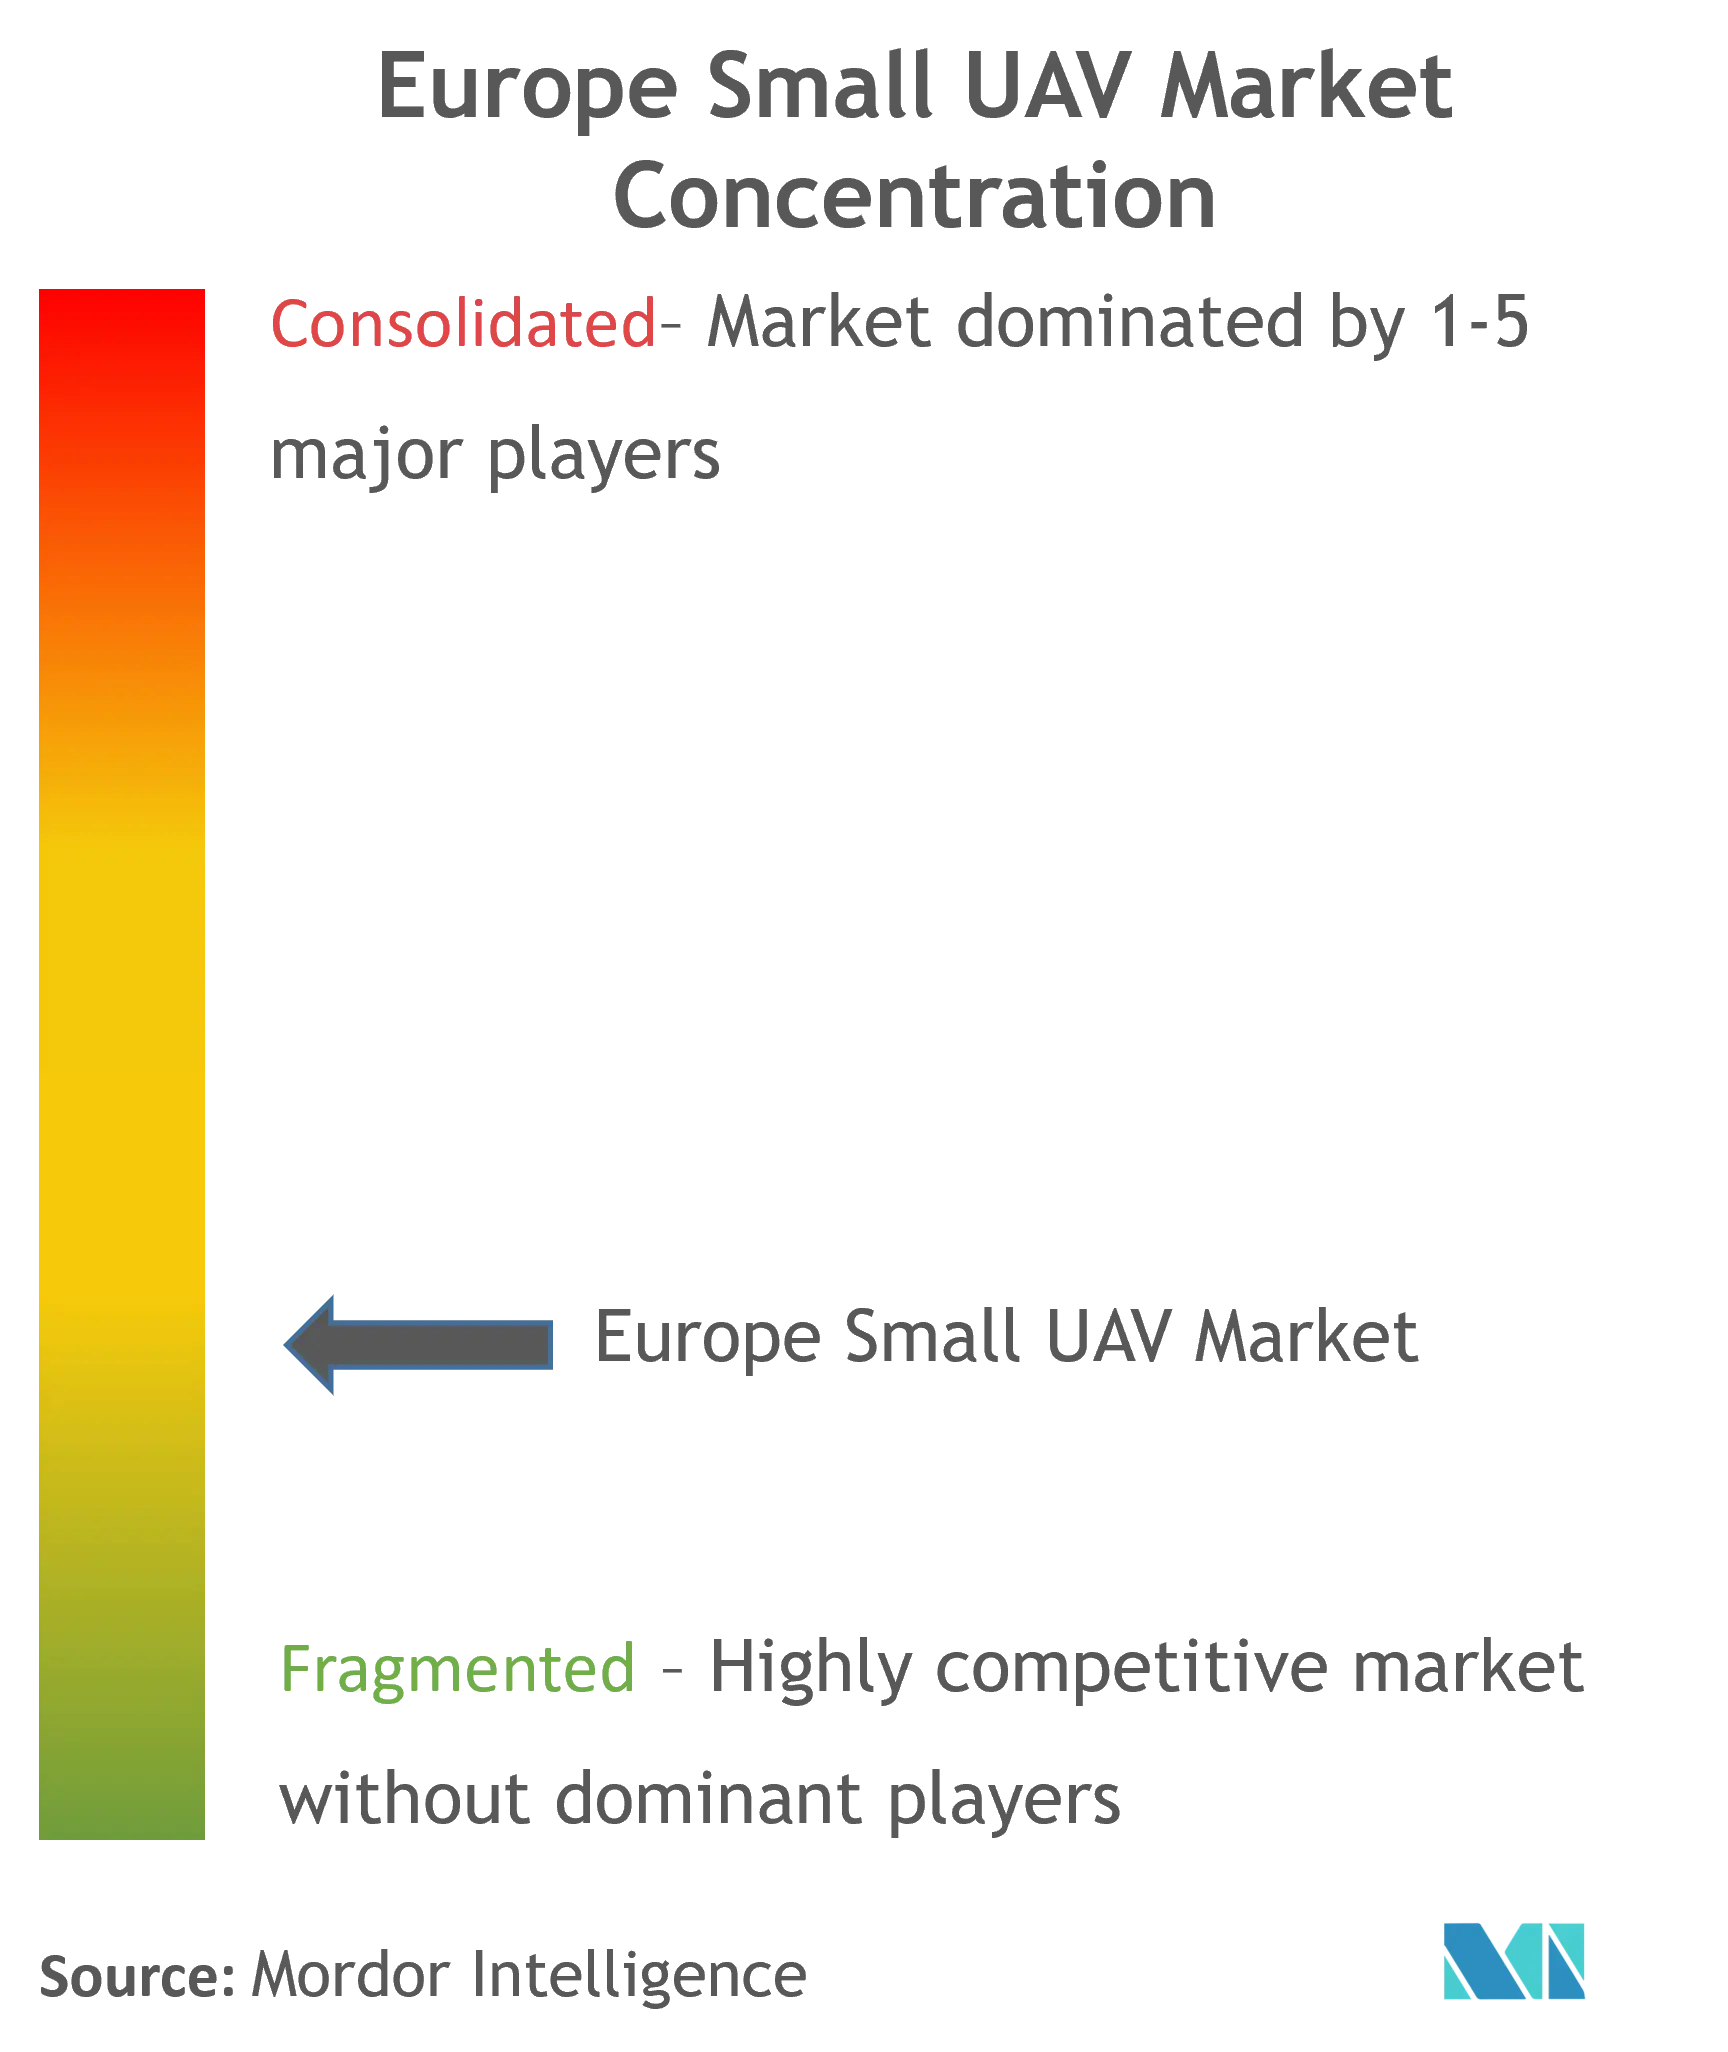 Europe Small UAV Market Concentration